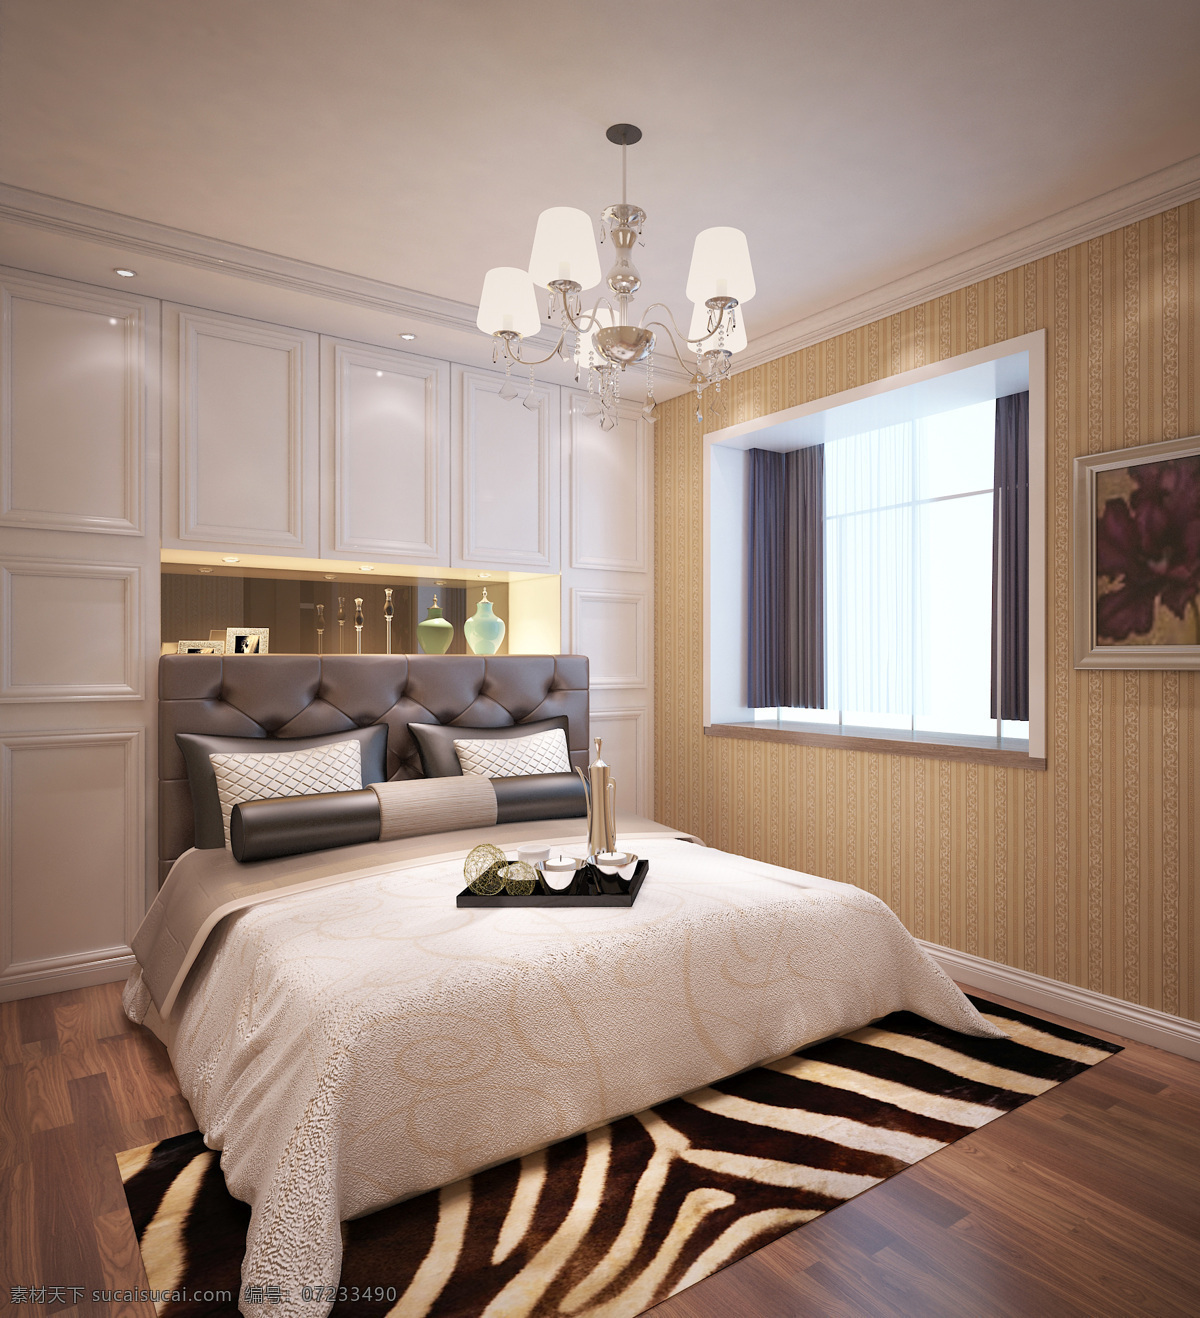 新 古典 卧室 设计图 新古典 模型 3dmax 家装 客厅 衣柜 背景 镶嵌 灰色